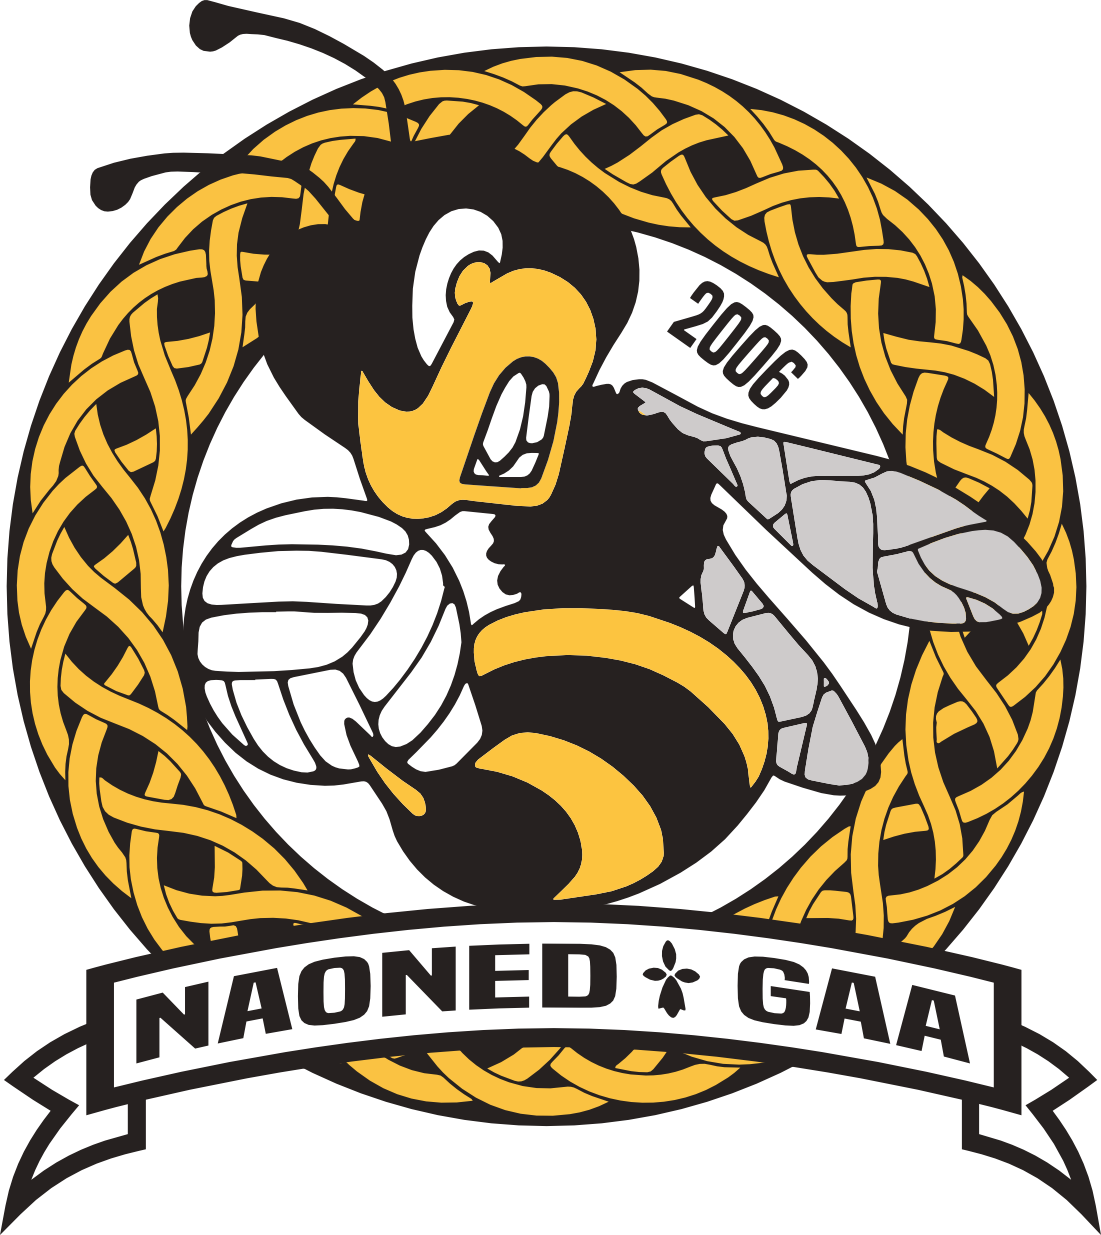 Football Gaelique Nantes (Naoned)